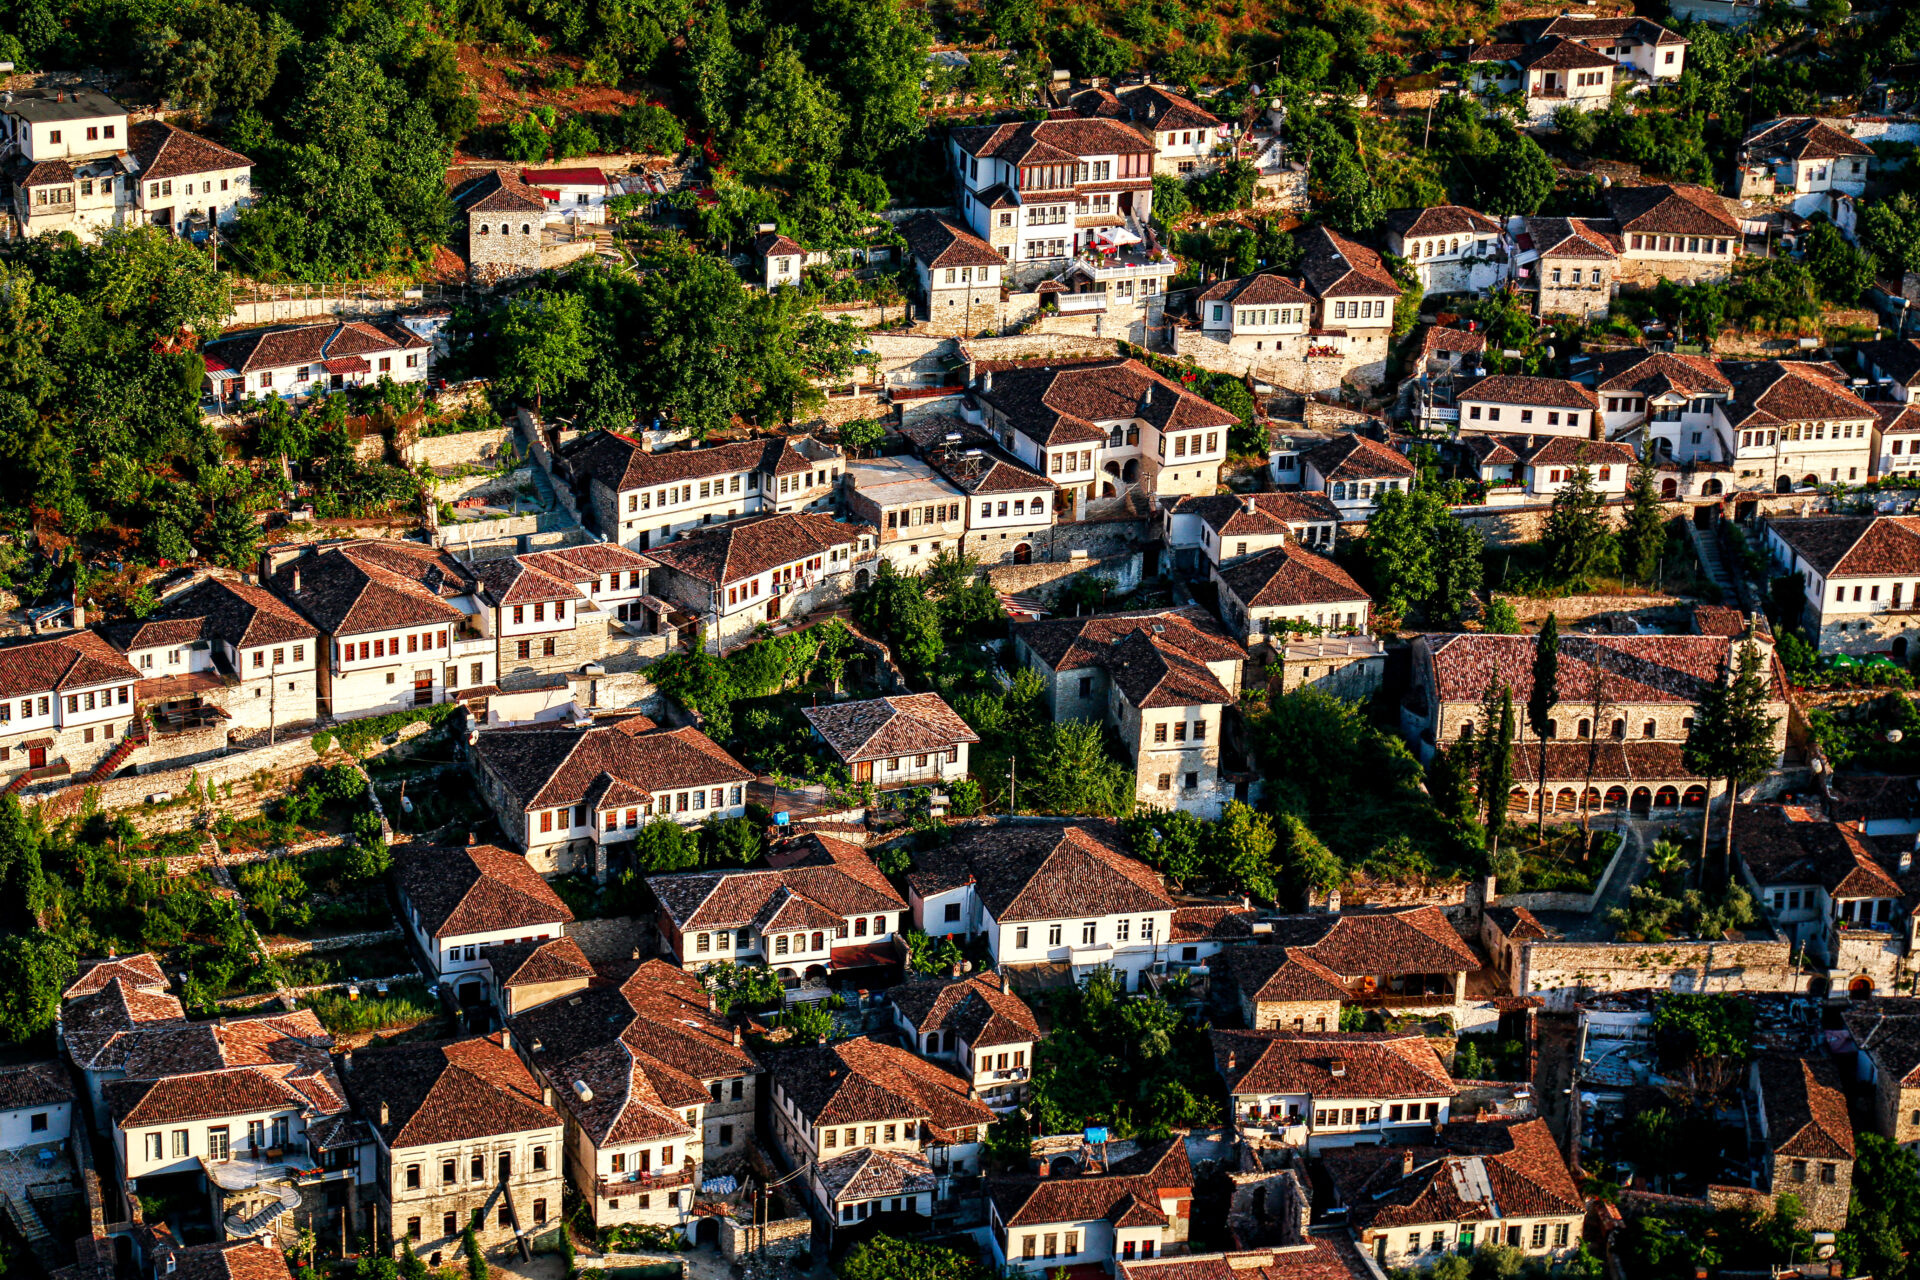 Gorica quarter, Berat